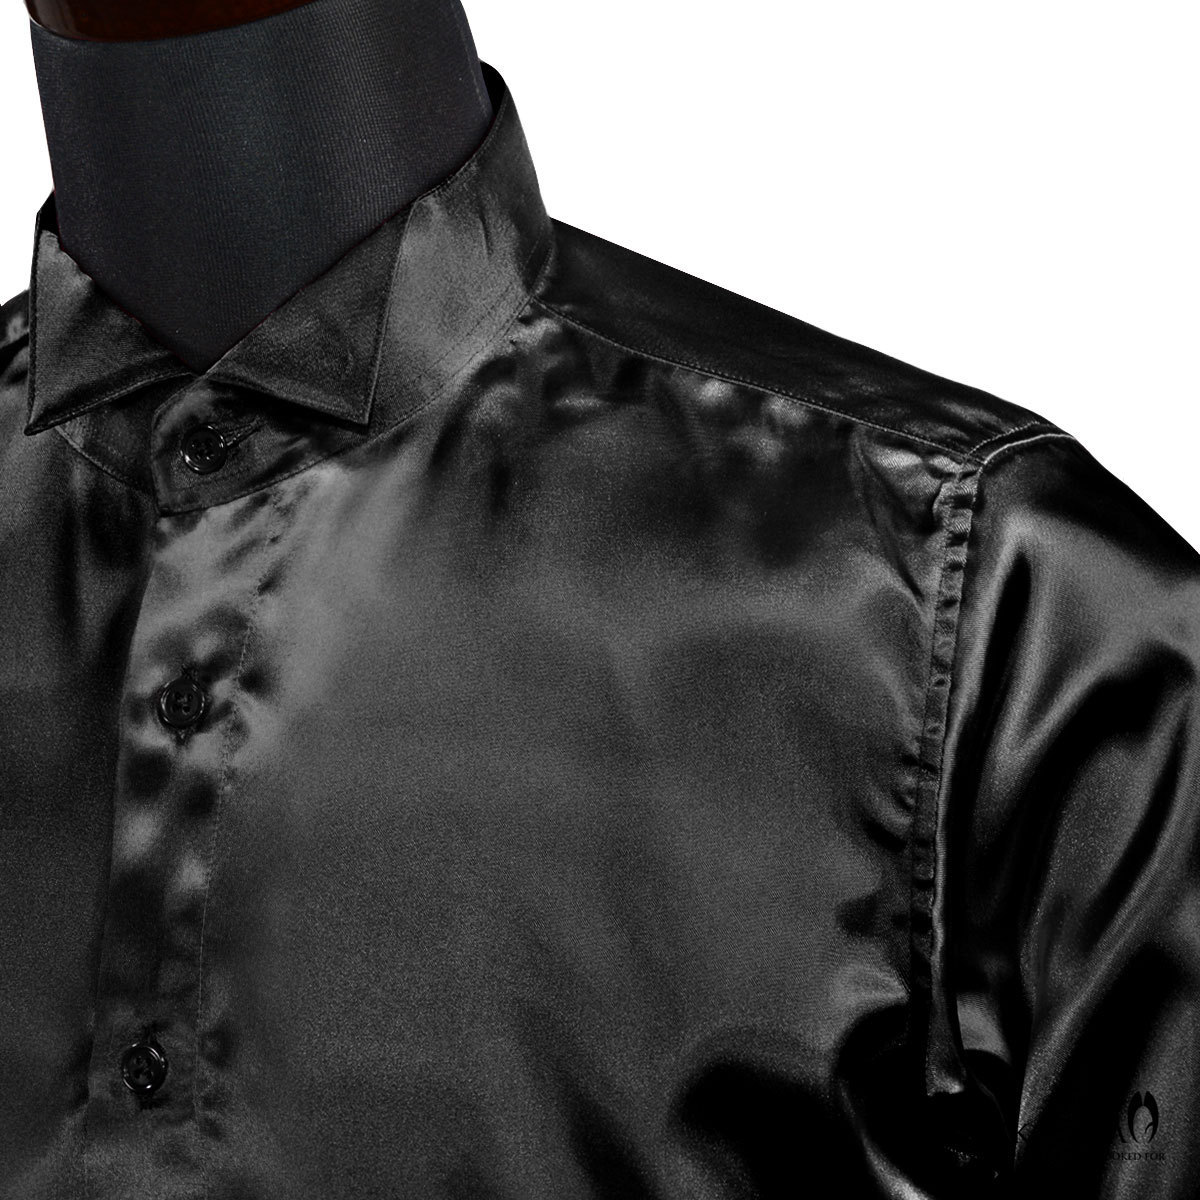 161208-bk wing цвет одноцветный глянец длинный рукав костюм форма презентация сорочка мужской сделано в Японии ( атлас черный чёрный ) SS party 